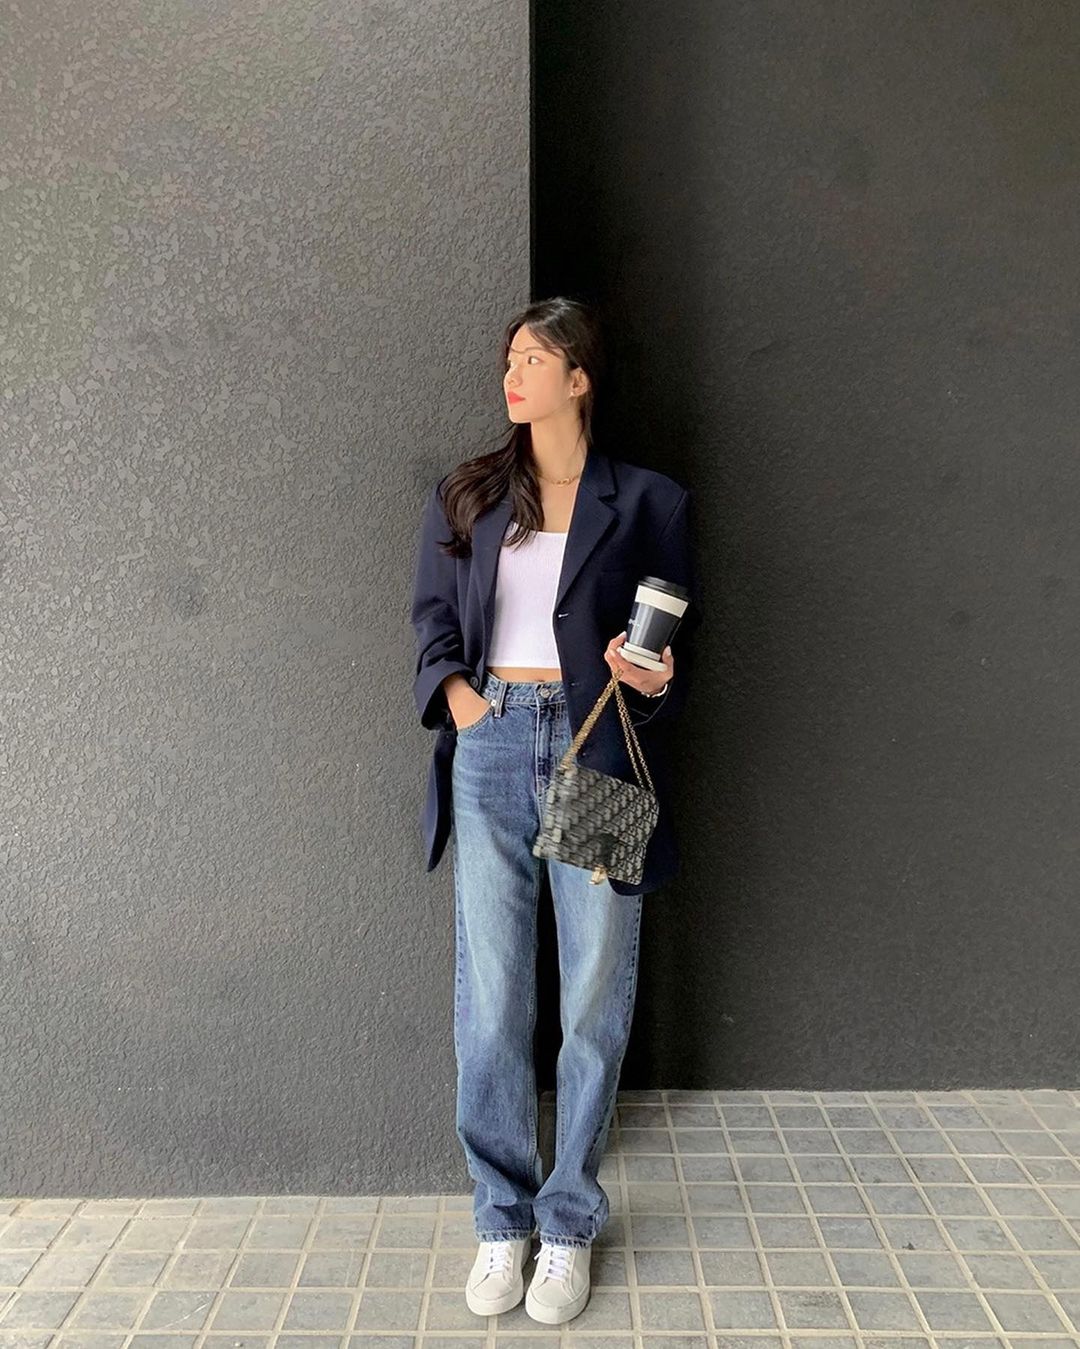 Học nàng blogger Hàn cách diện jeans “đỉnh của chóp”: Vừa hack dáng vừa thanh lịch để đến sở làm - Ảnh 5